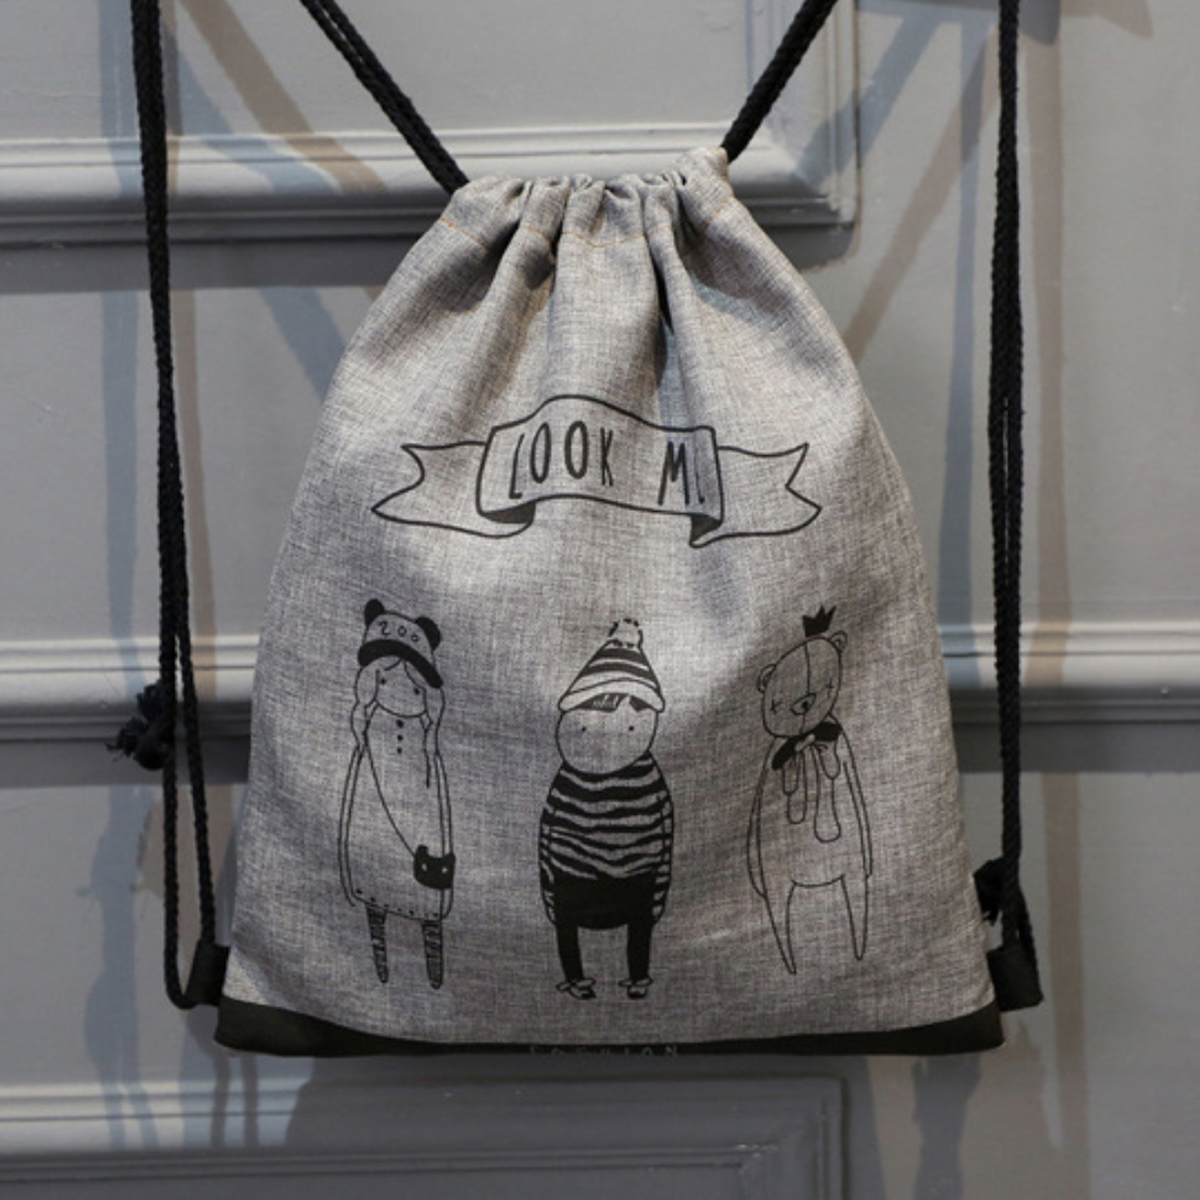 Stylish Drawstring Bag